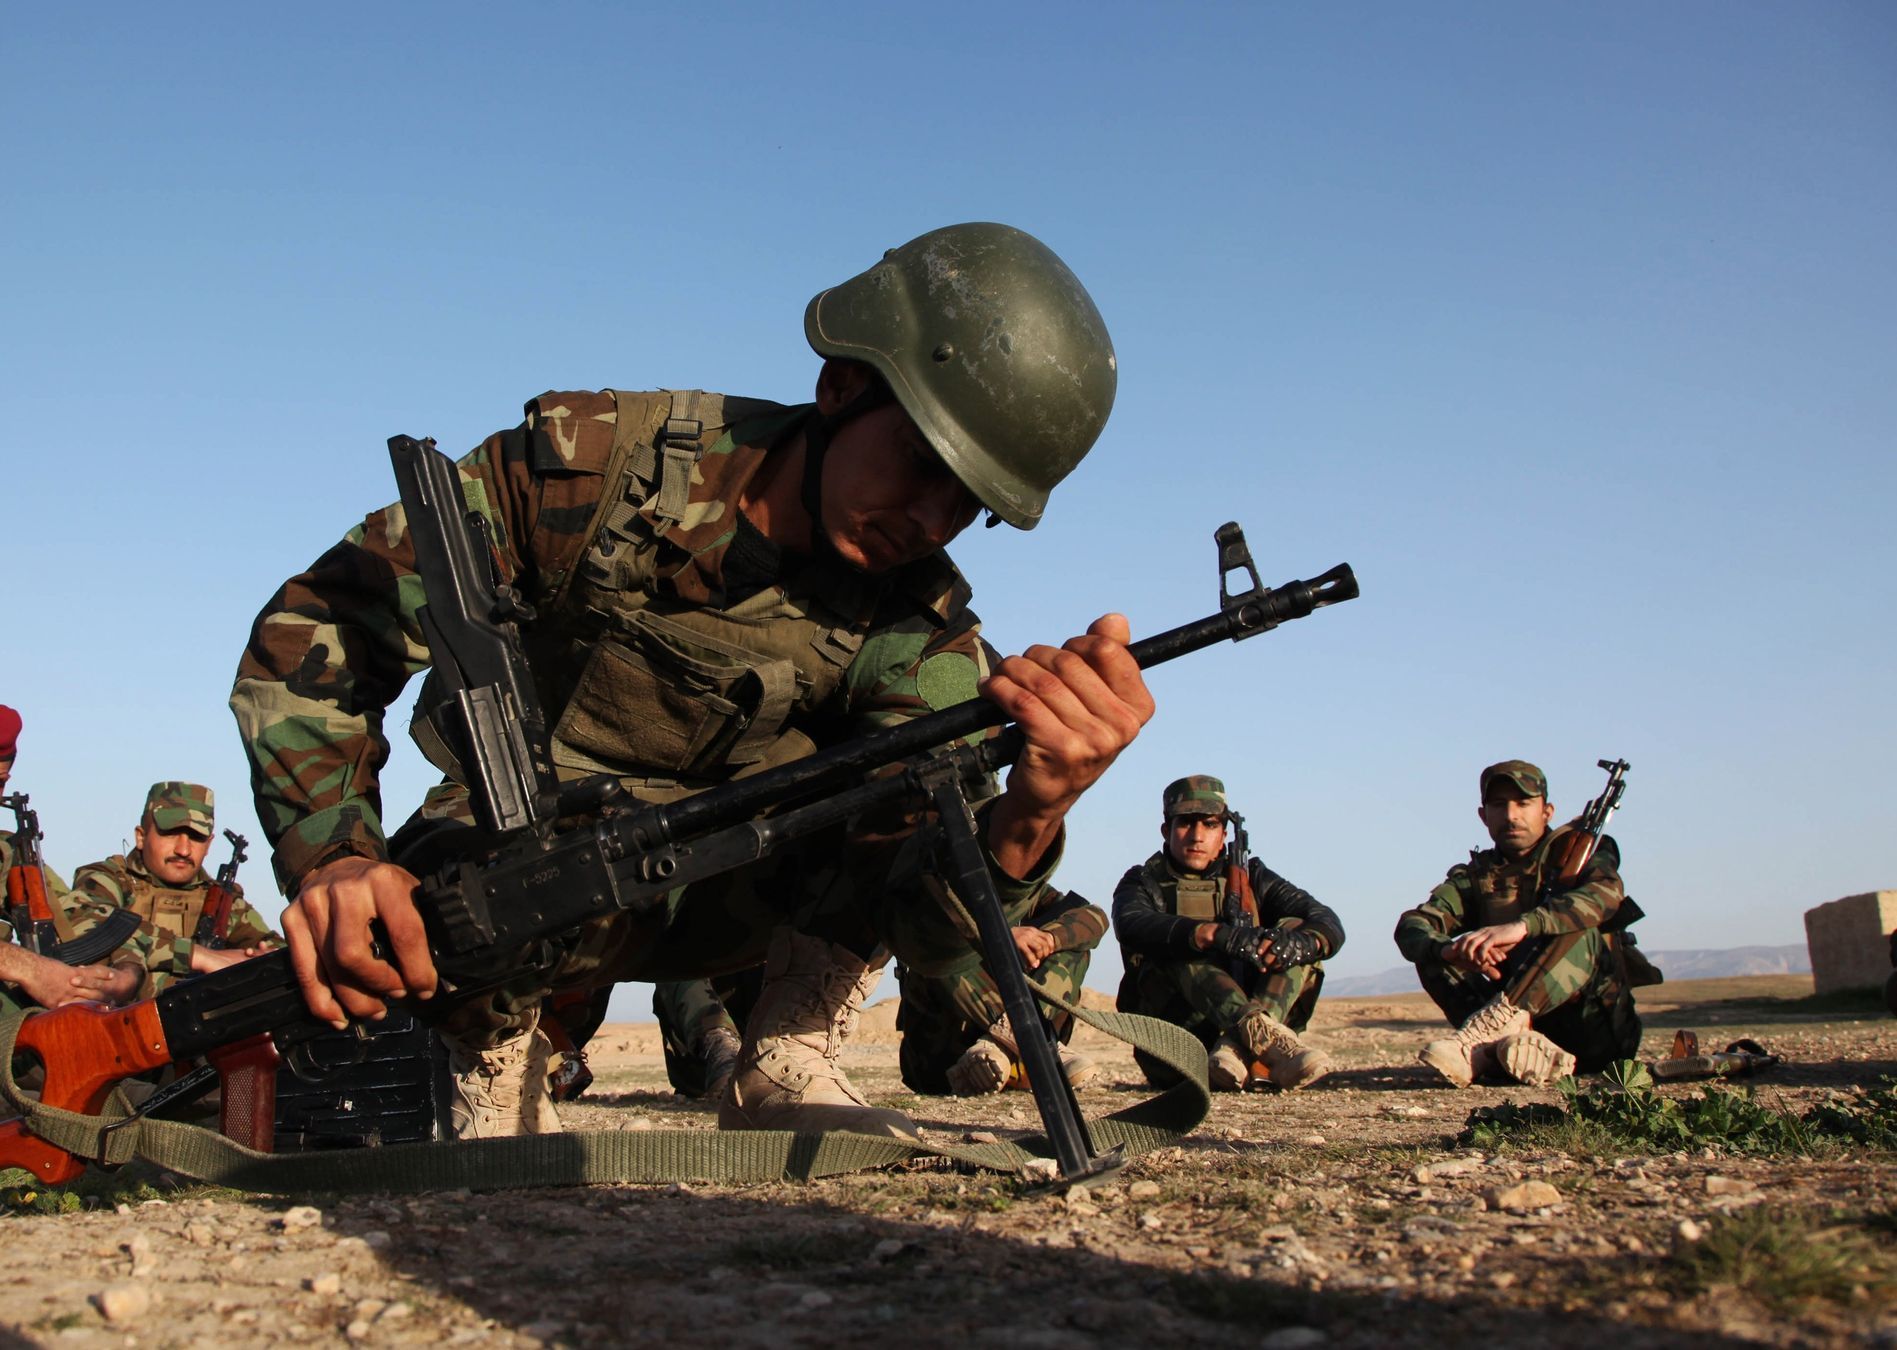 Přislušník kurdských jednotek při výcviku na severu Iráku.